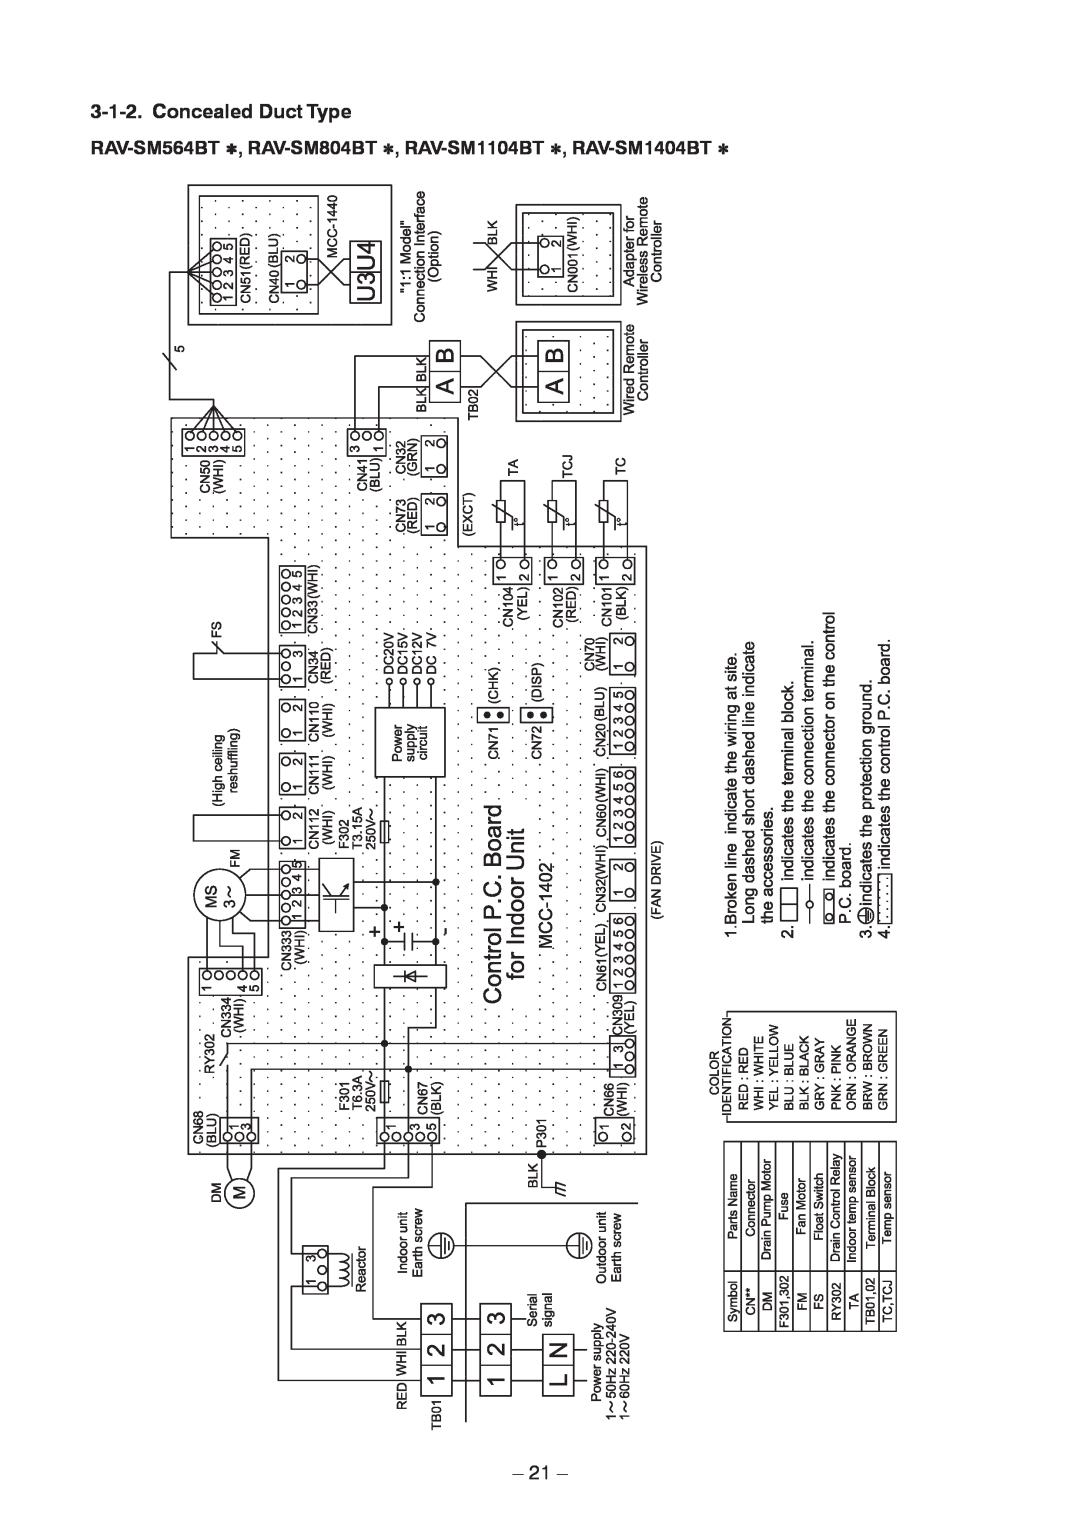 Toshiba RAV-SM804BT-TR, RAV-SM454MUT-E, RAV-SM404MUT-TR, RAV-SM1404BT-E, RAV-SM1104BT-E, RAV-SM804BT-E Concealed Duct Type, 21 